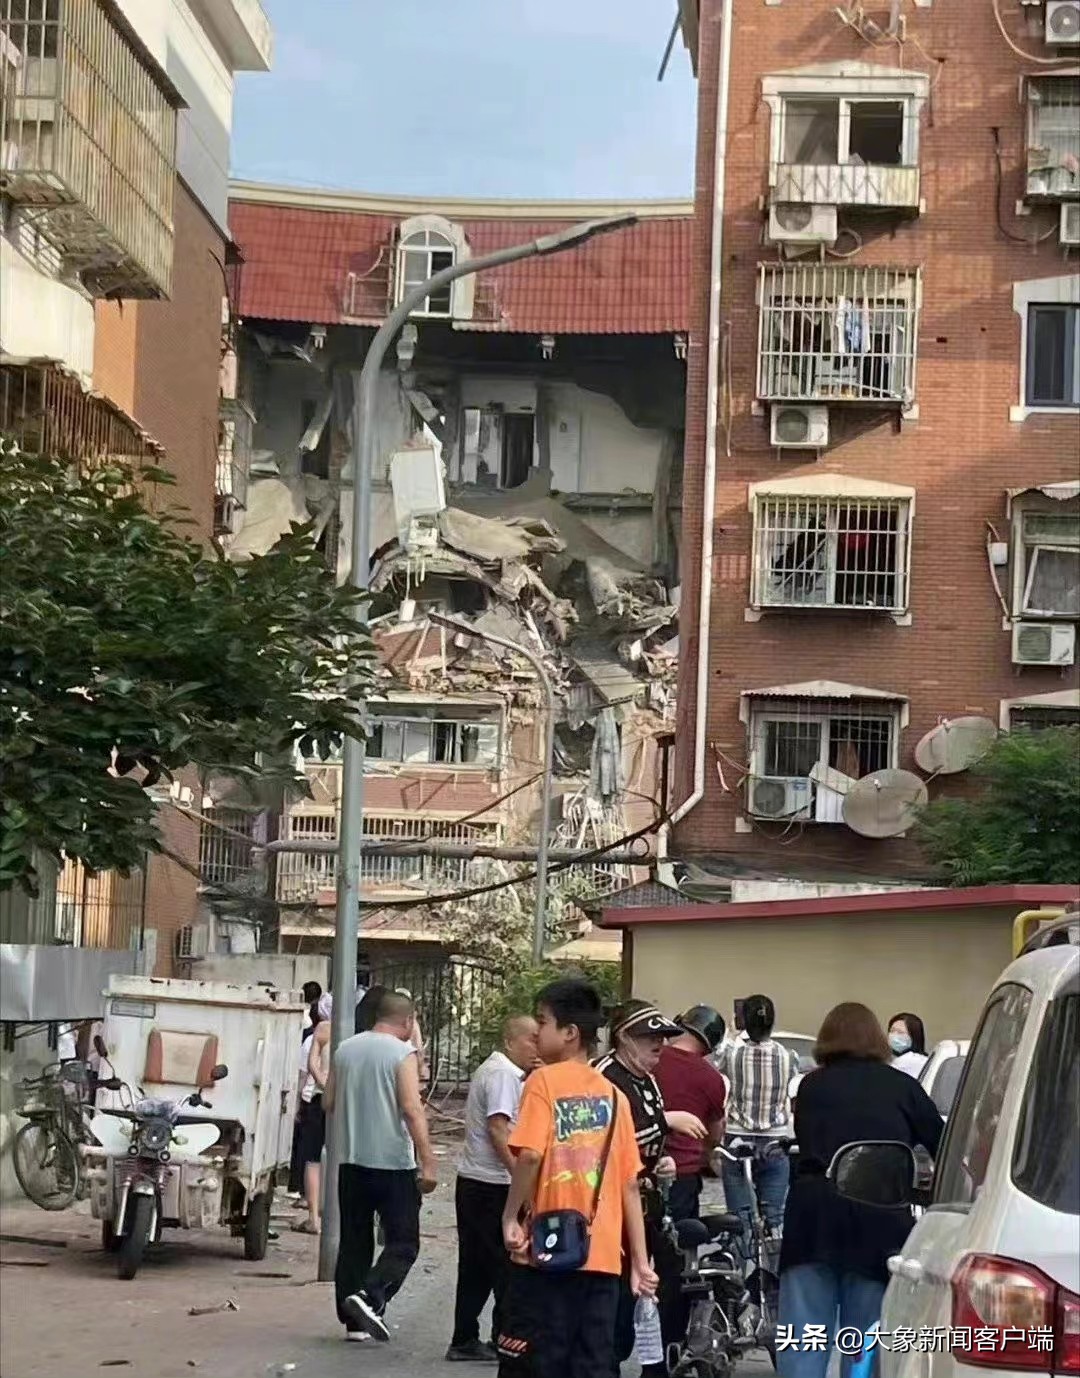 天津北辰区一小区发生爆炸事故，居民：听到很大爆炸声，看到3号楼体出现坍塌